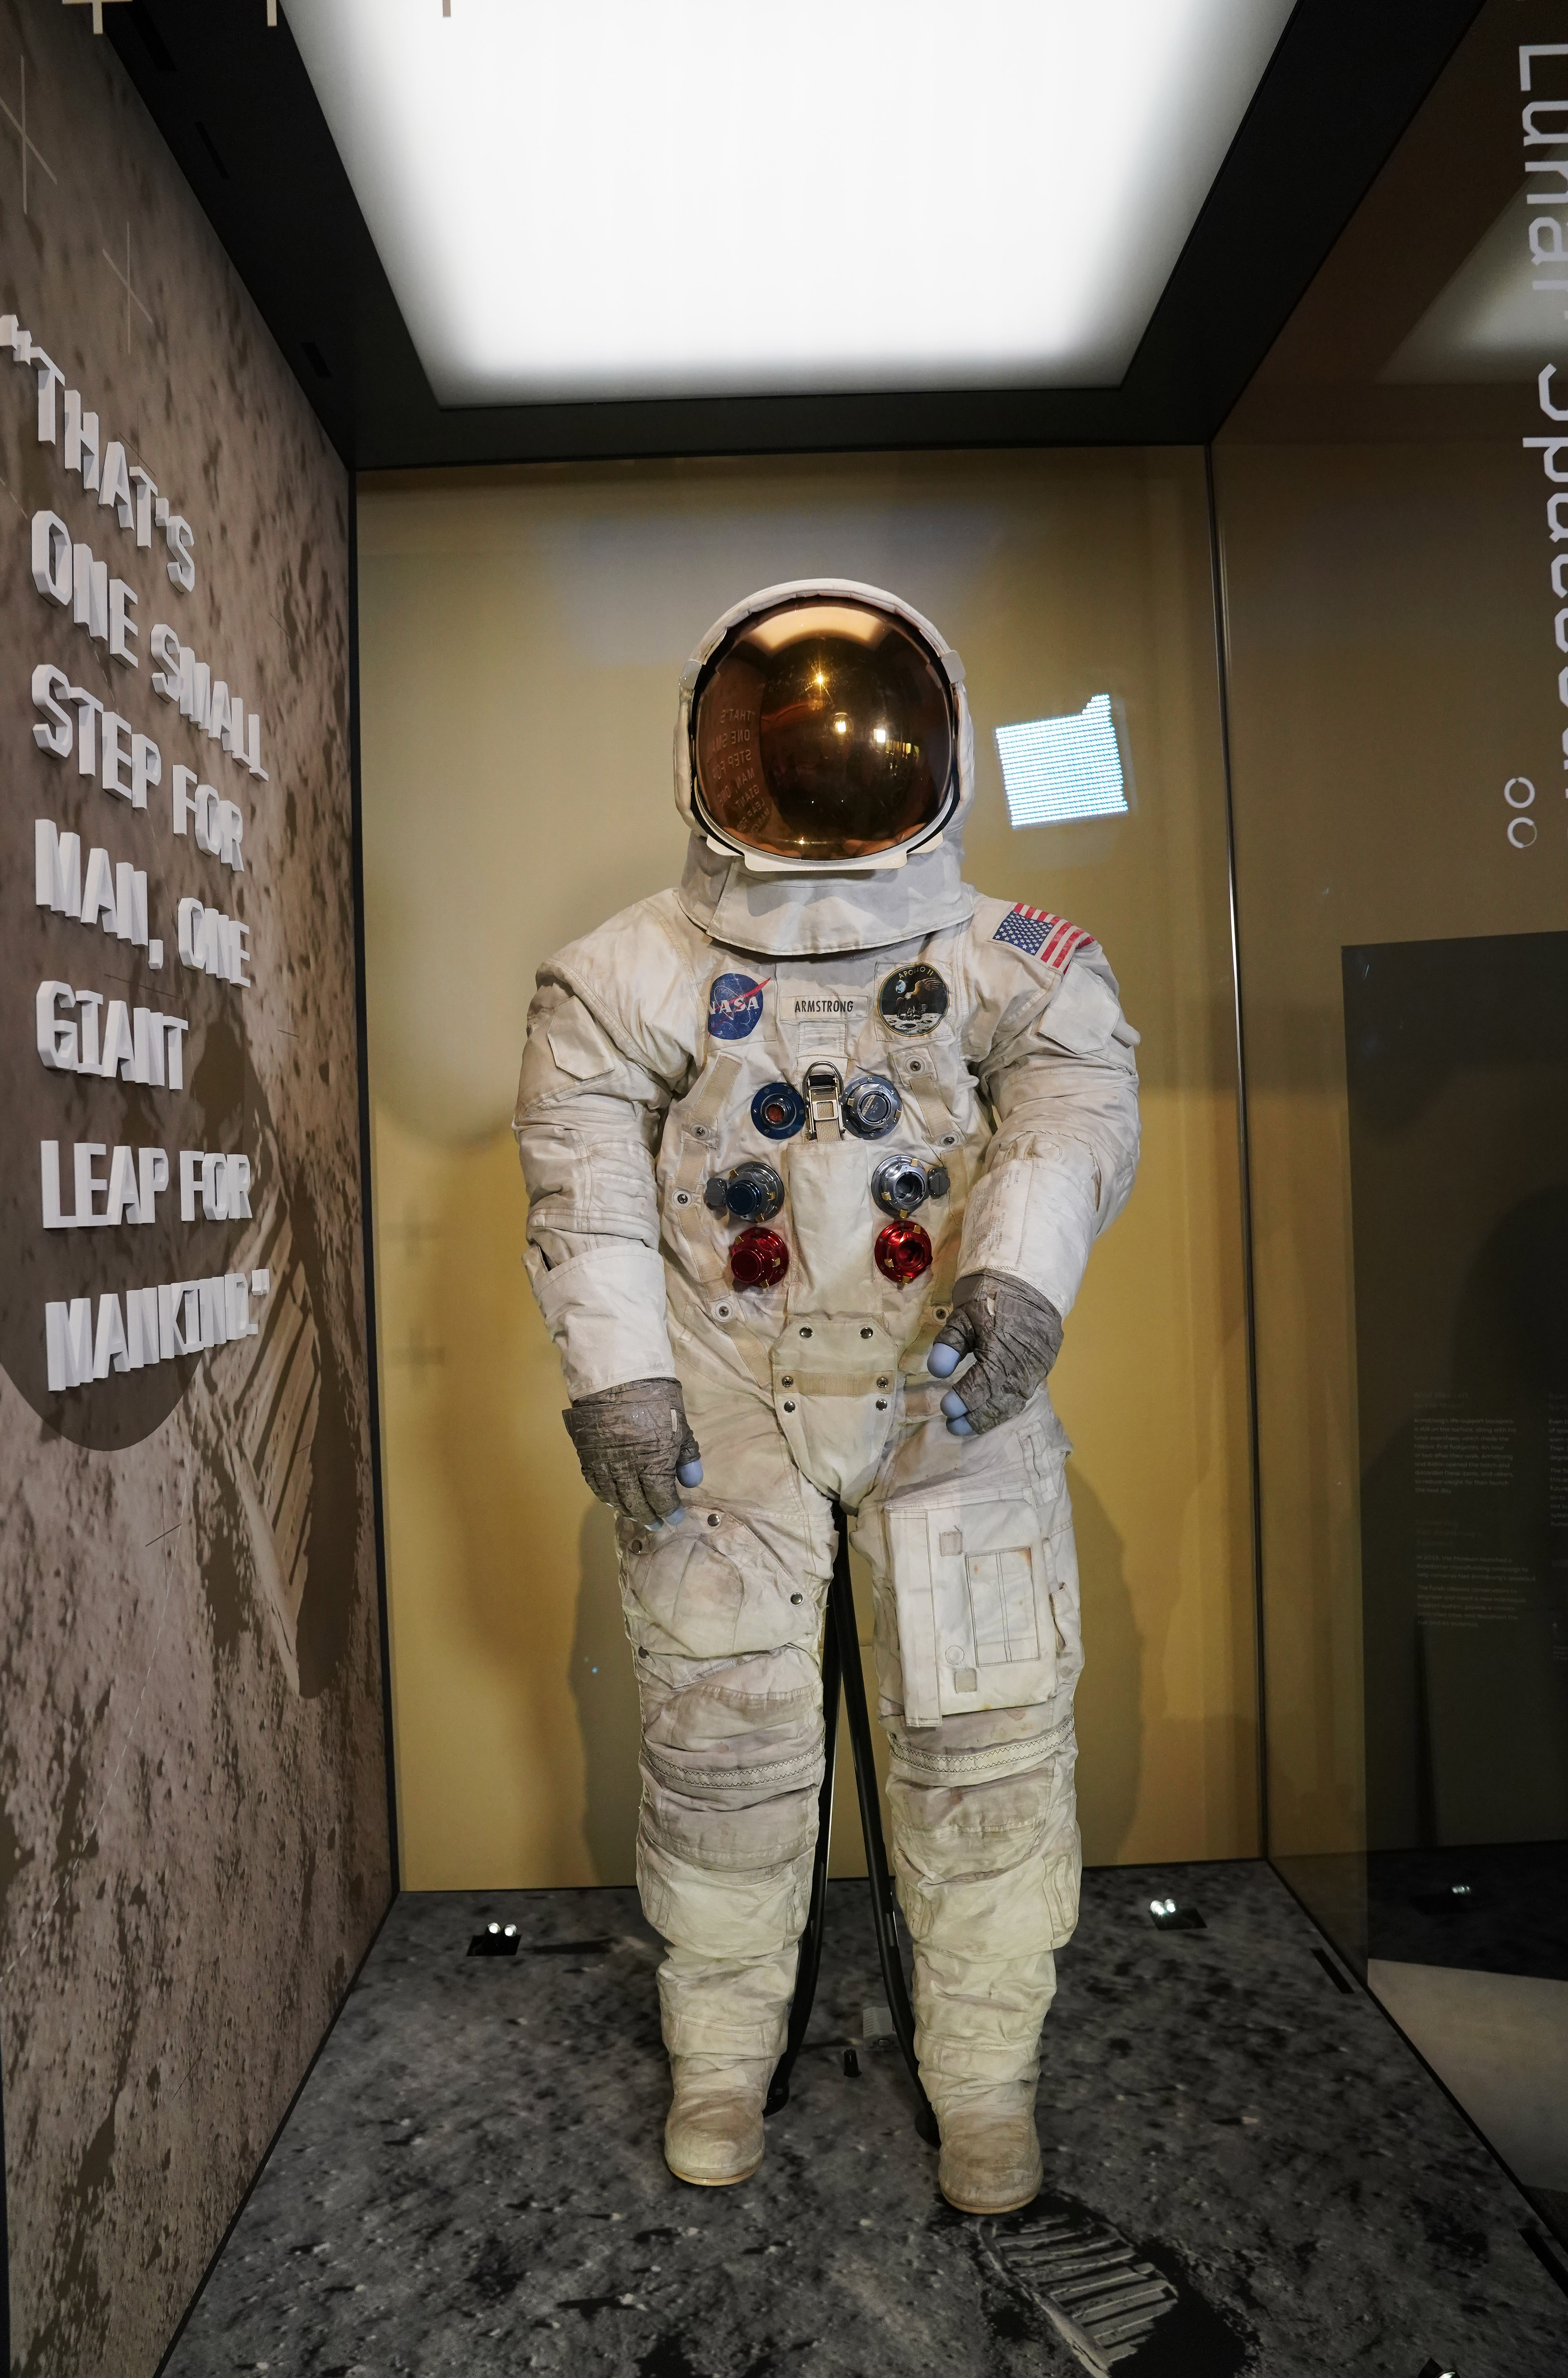 阿姆斯特朗登月宇航服重新与公众见面